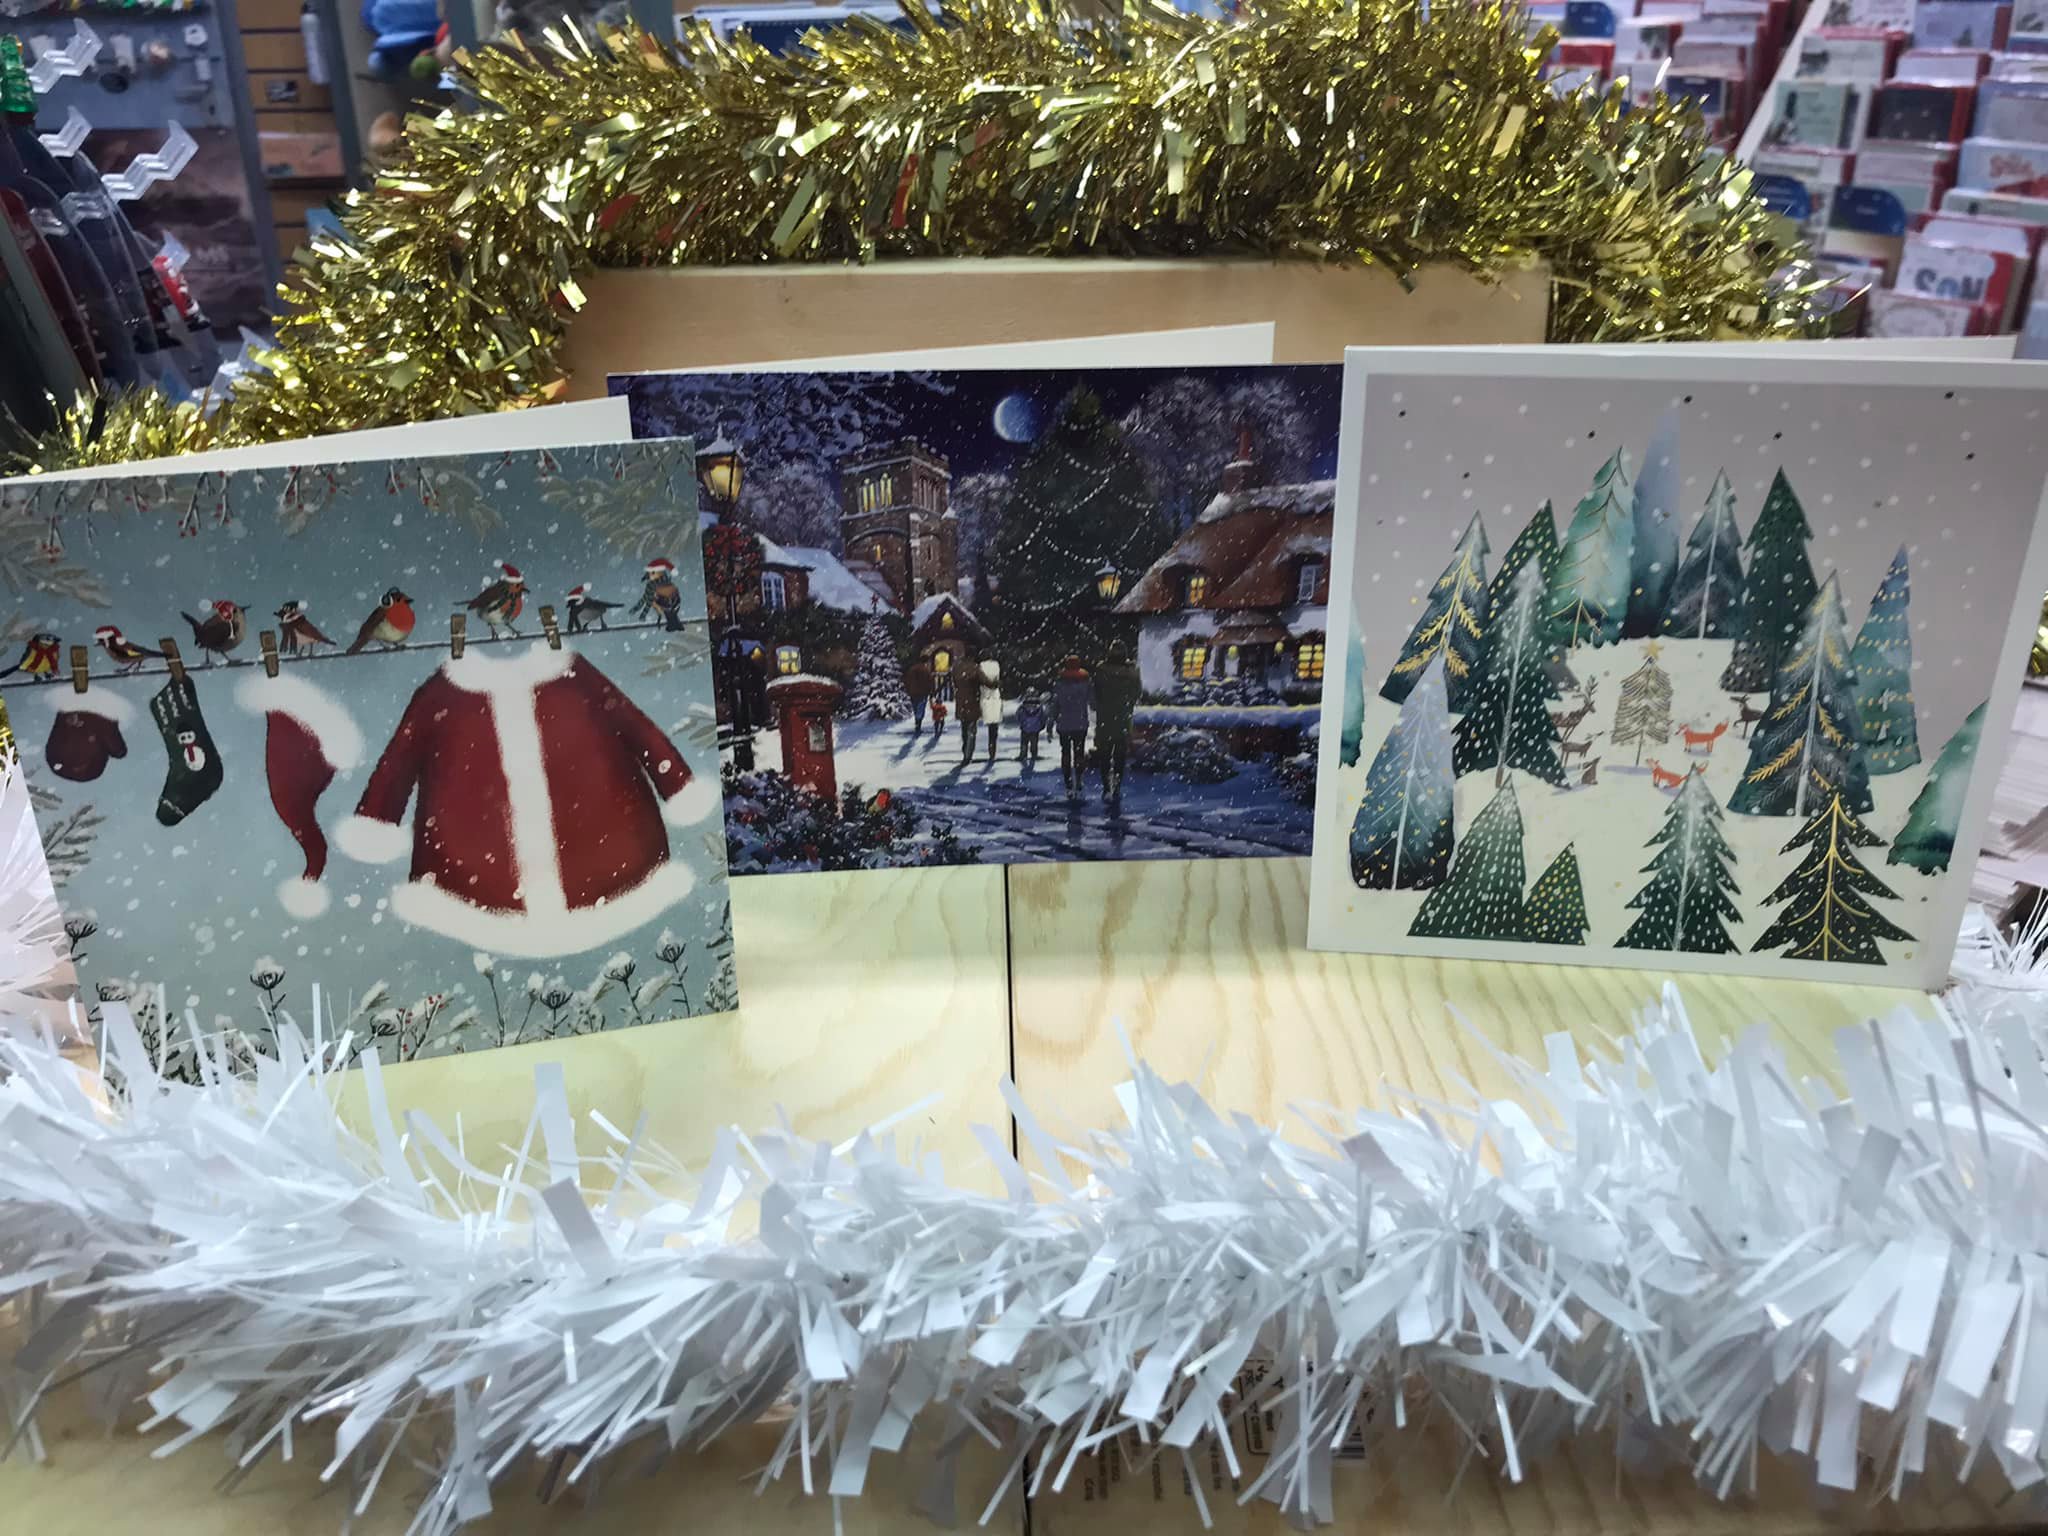 Isles of Scilly, Bourdeaux, Bourdeaux Shop, Christmas, Festive, Cards